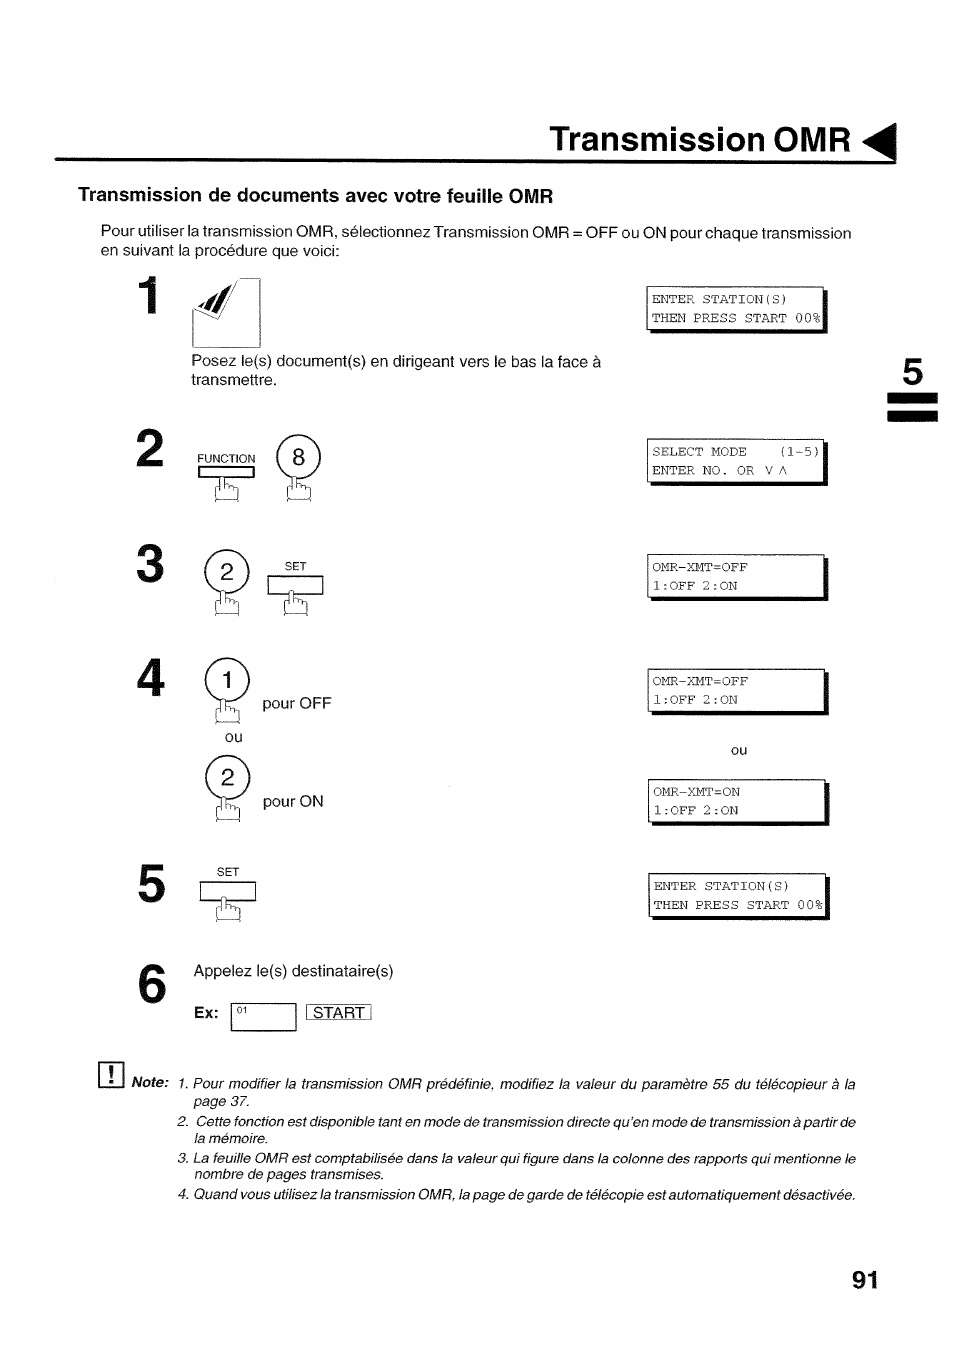 Transmission de documents avec votre feuille omr, Transmission omr | Panasonic UF560 Manuel d'utilisation | Page 93 / 182